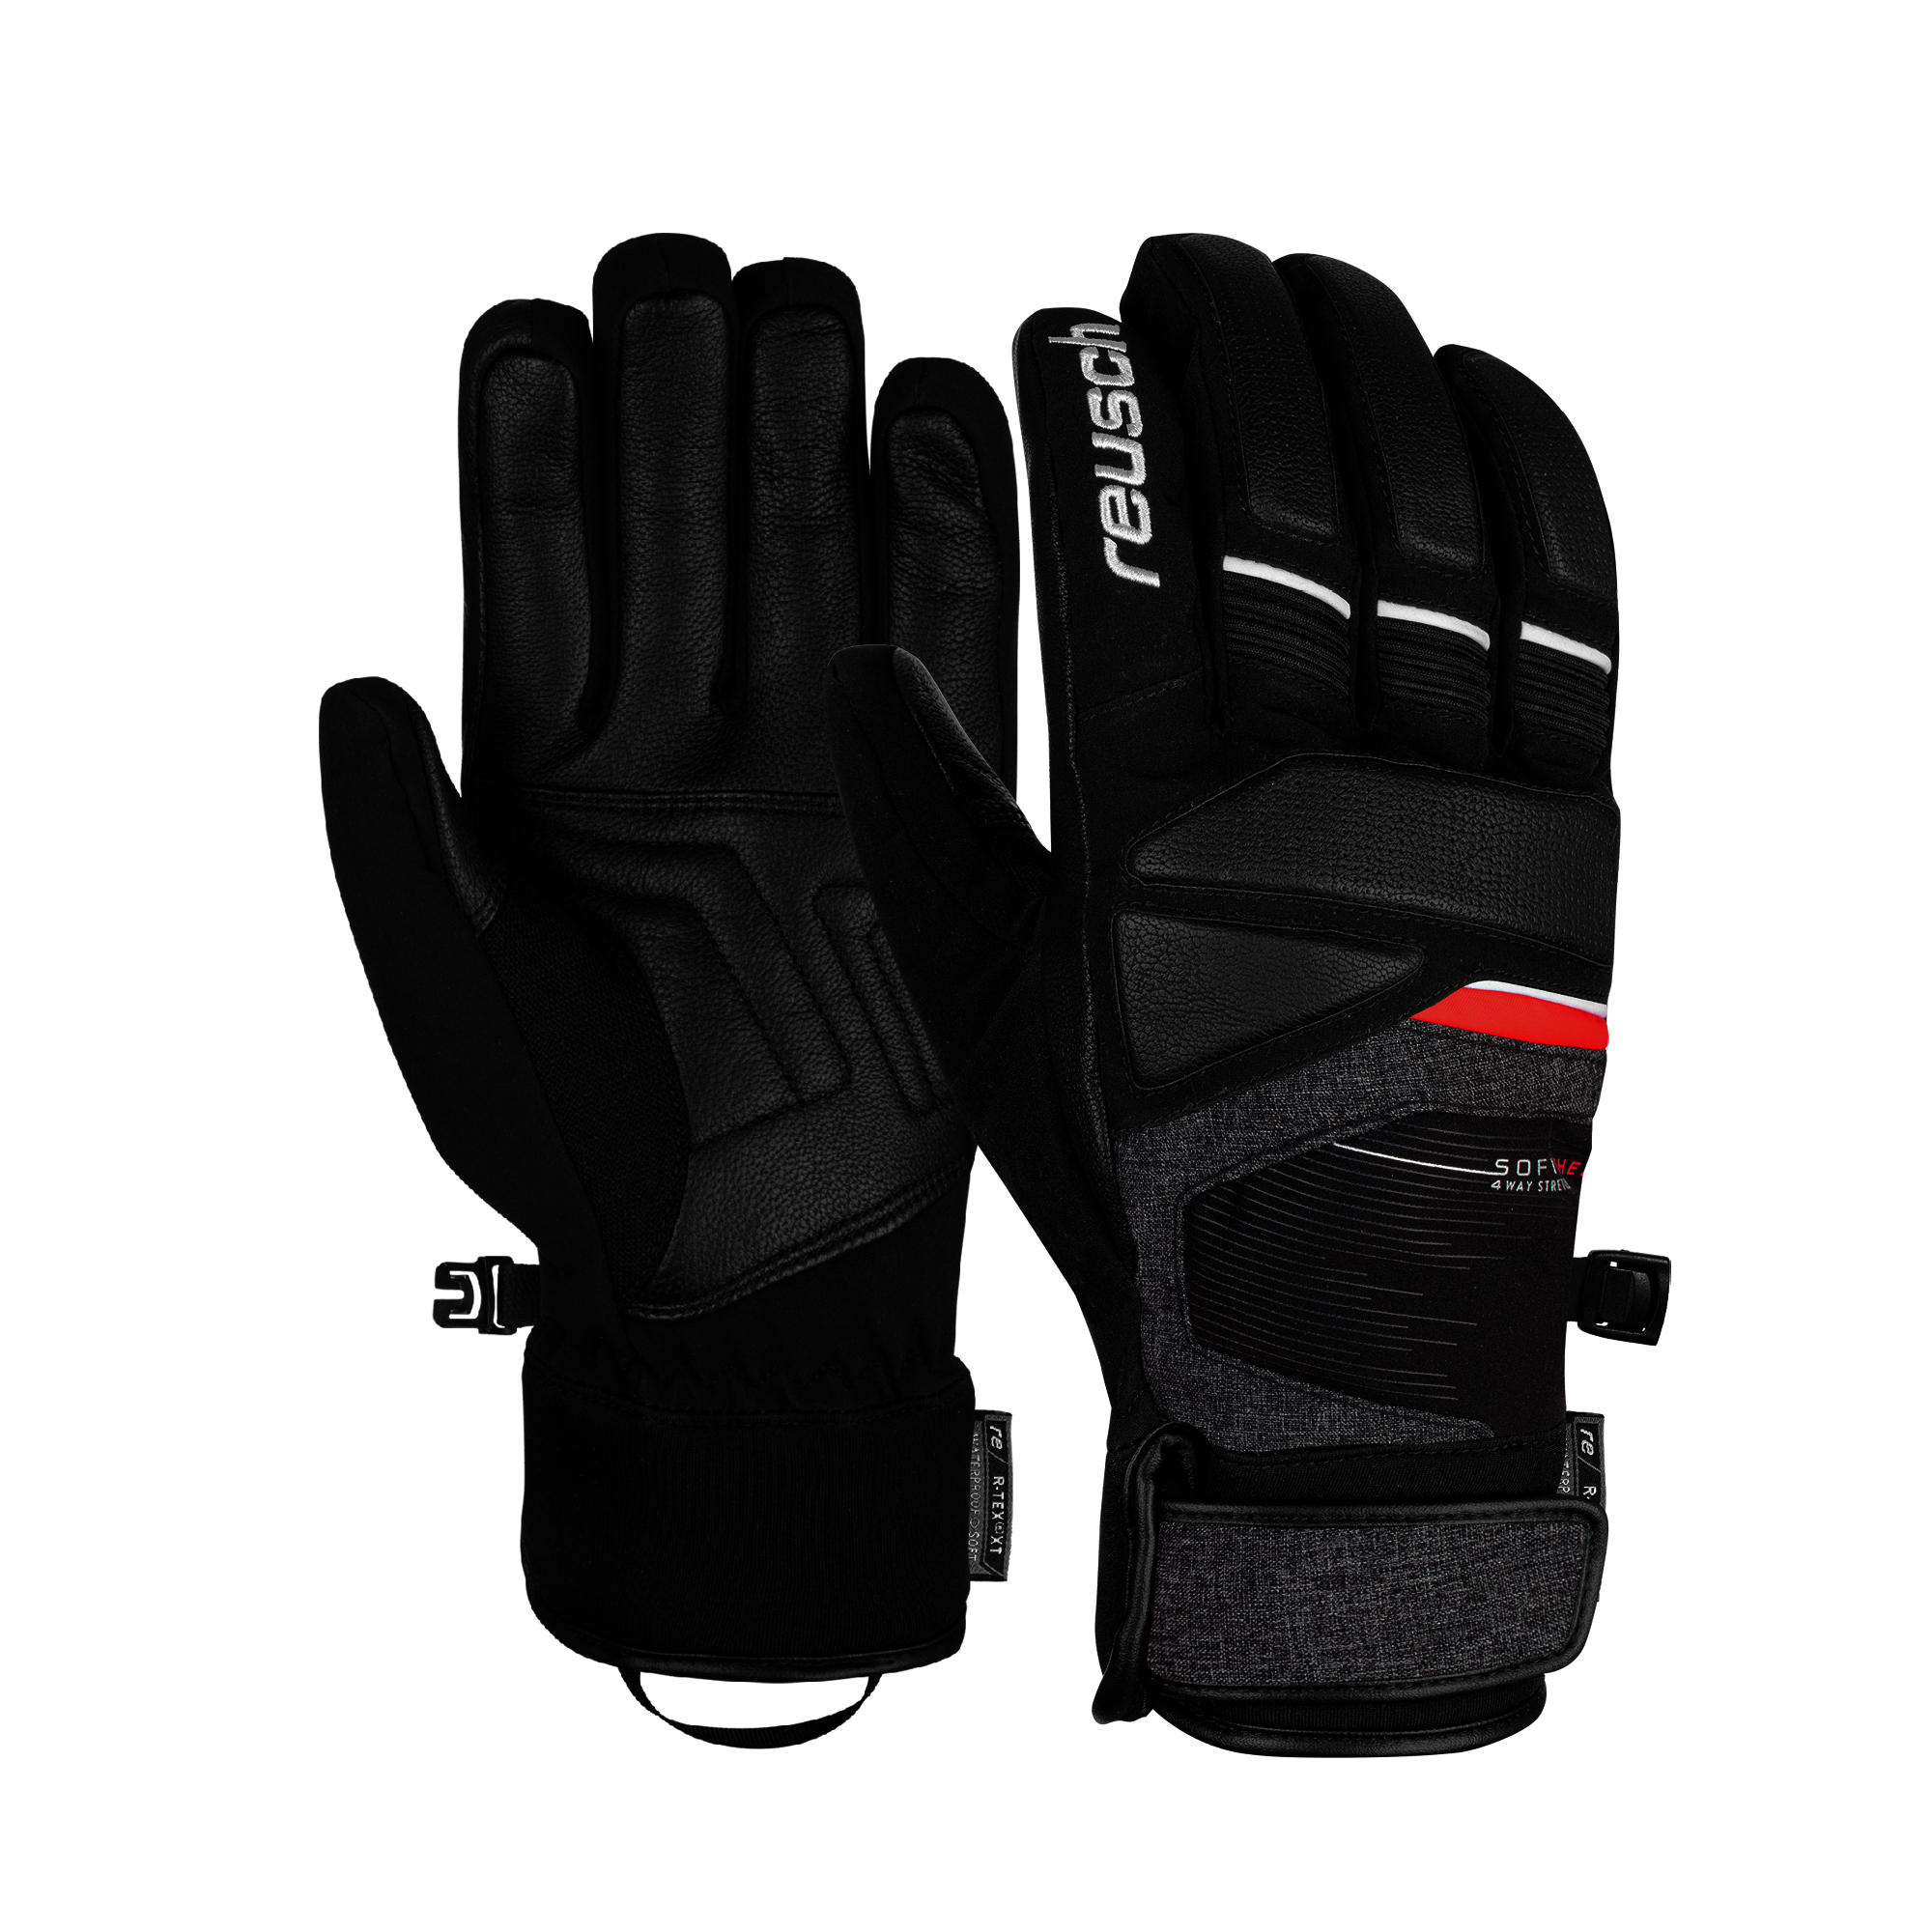 Reusch Storm R-Tex Gents Glove